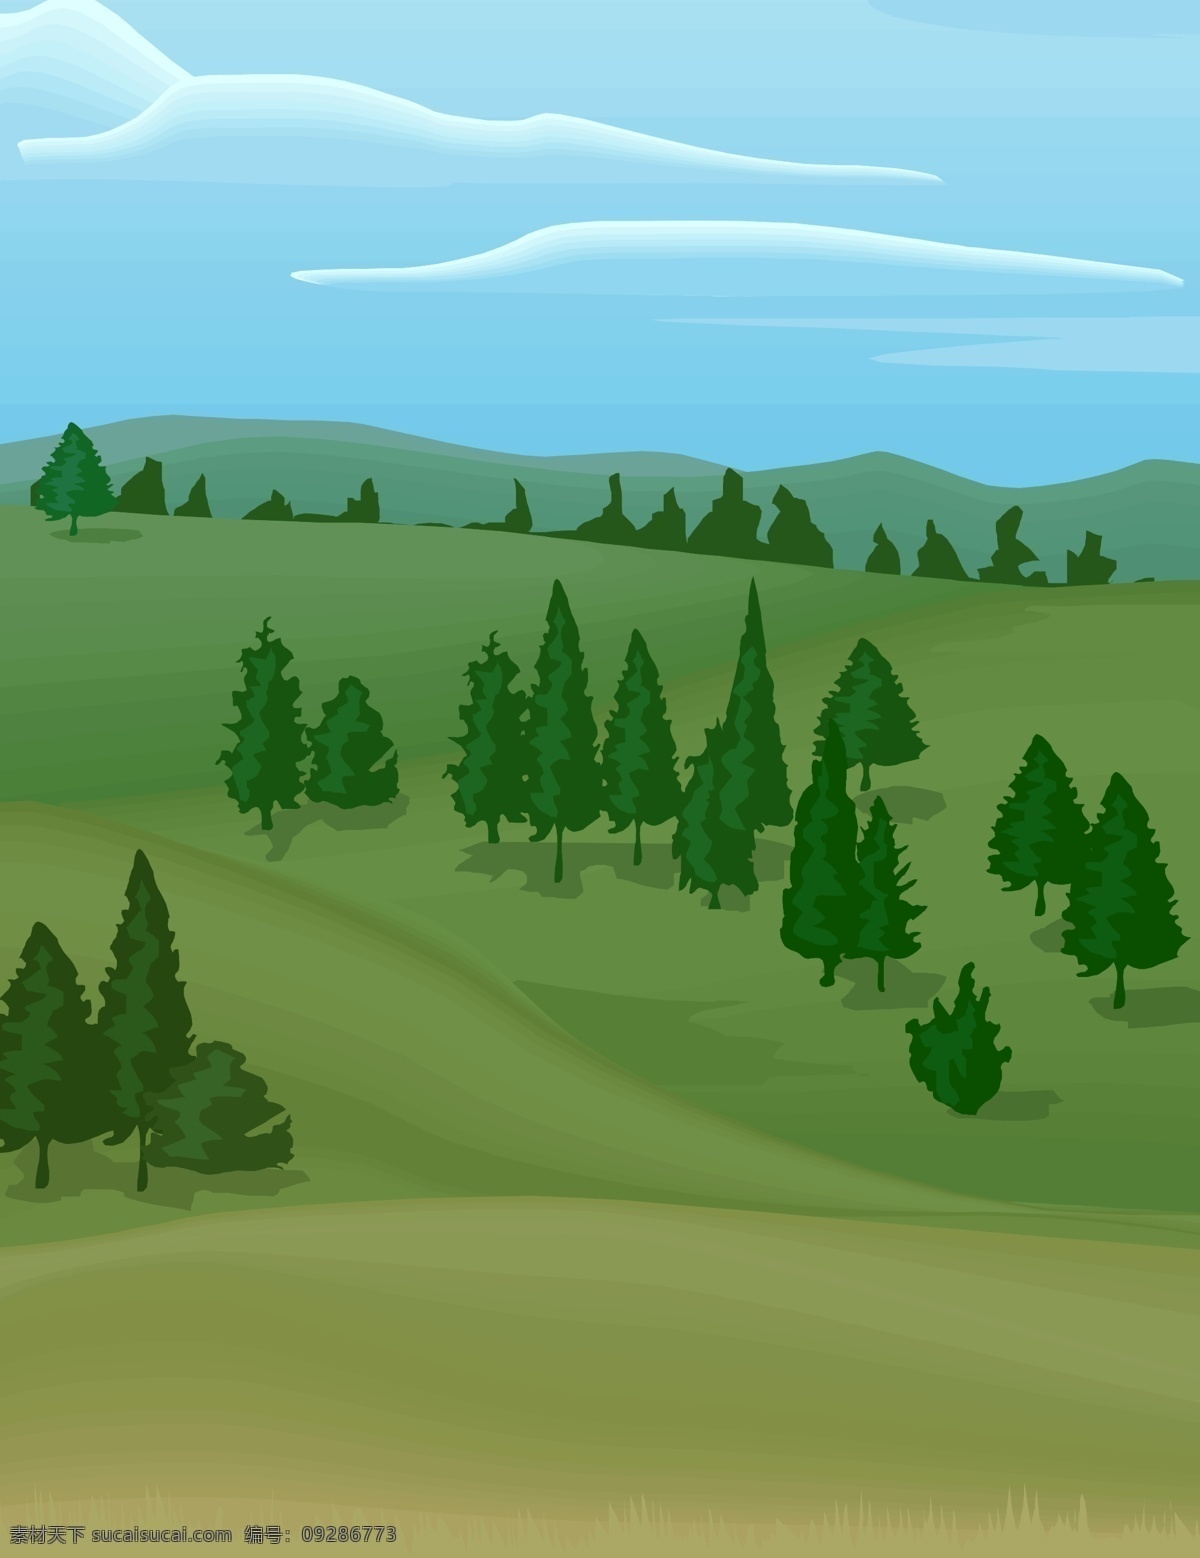 春天 里 山丘 草 其他矢量 矢量素材 矢量图库 树木 春天里的山丘 自然风景插画 插画集